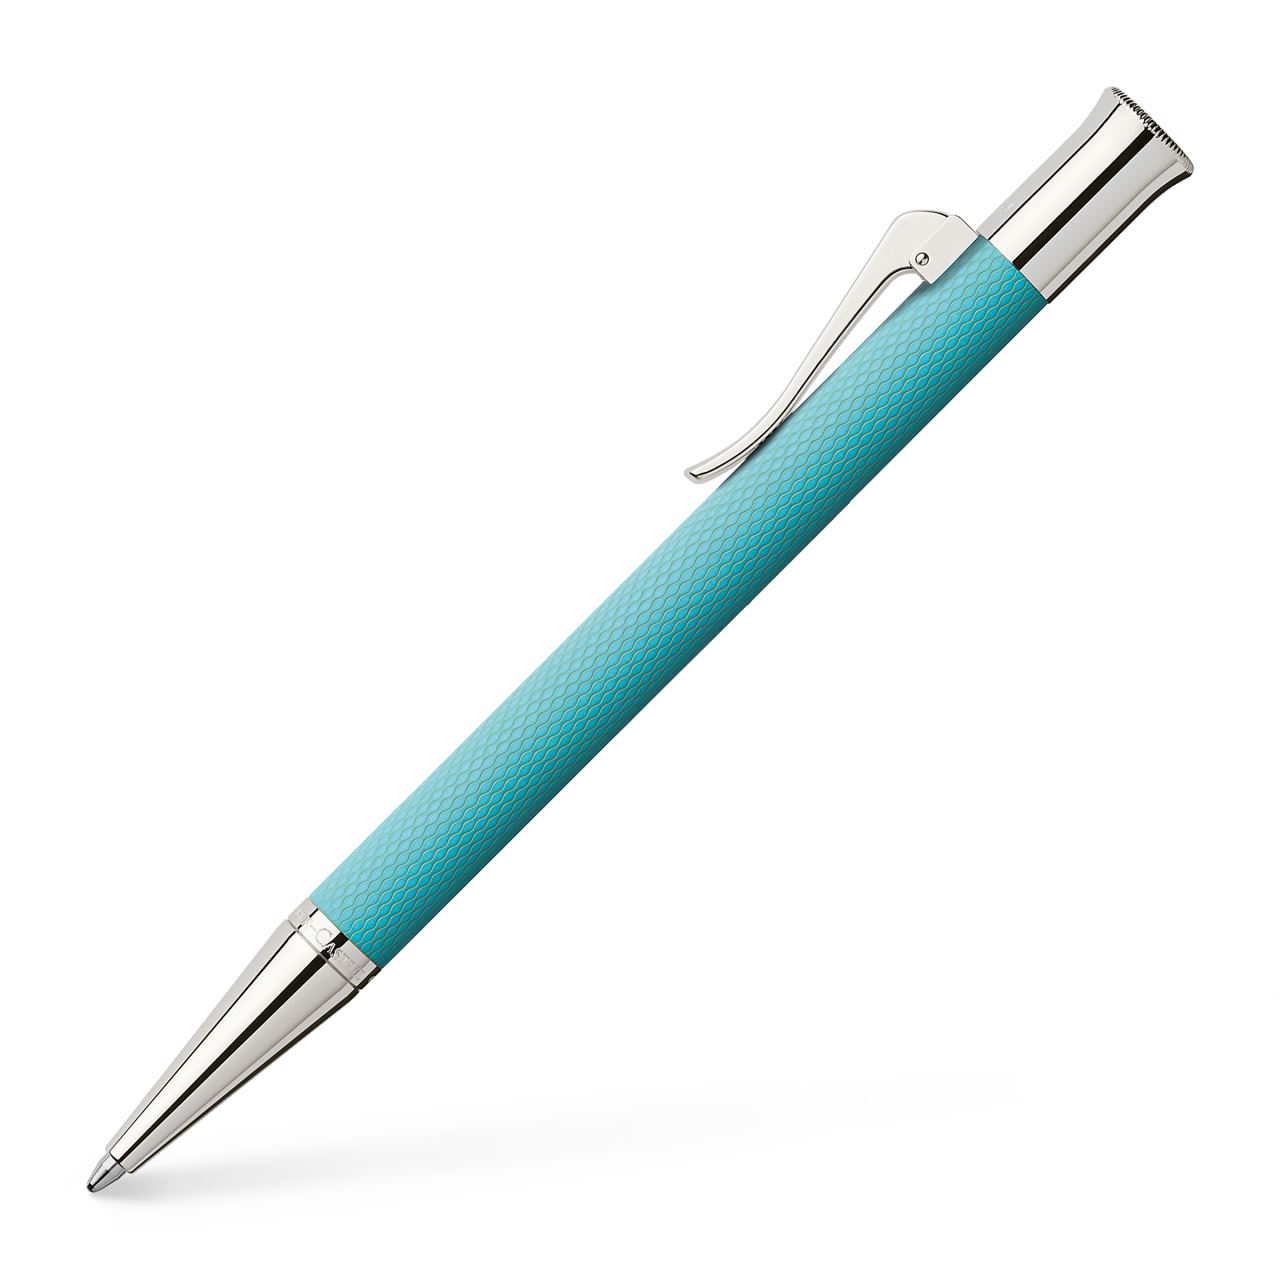 Graf-von-Faber-Castell - Ballpoint pen Guilloche Turquoise